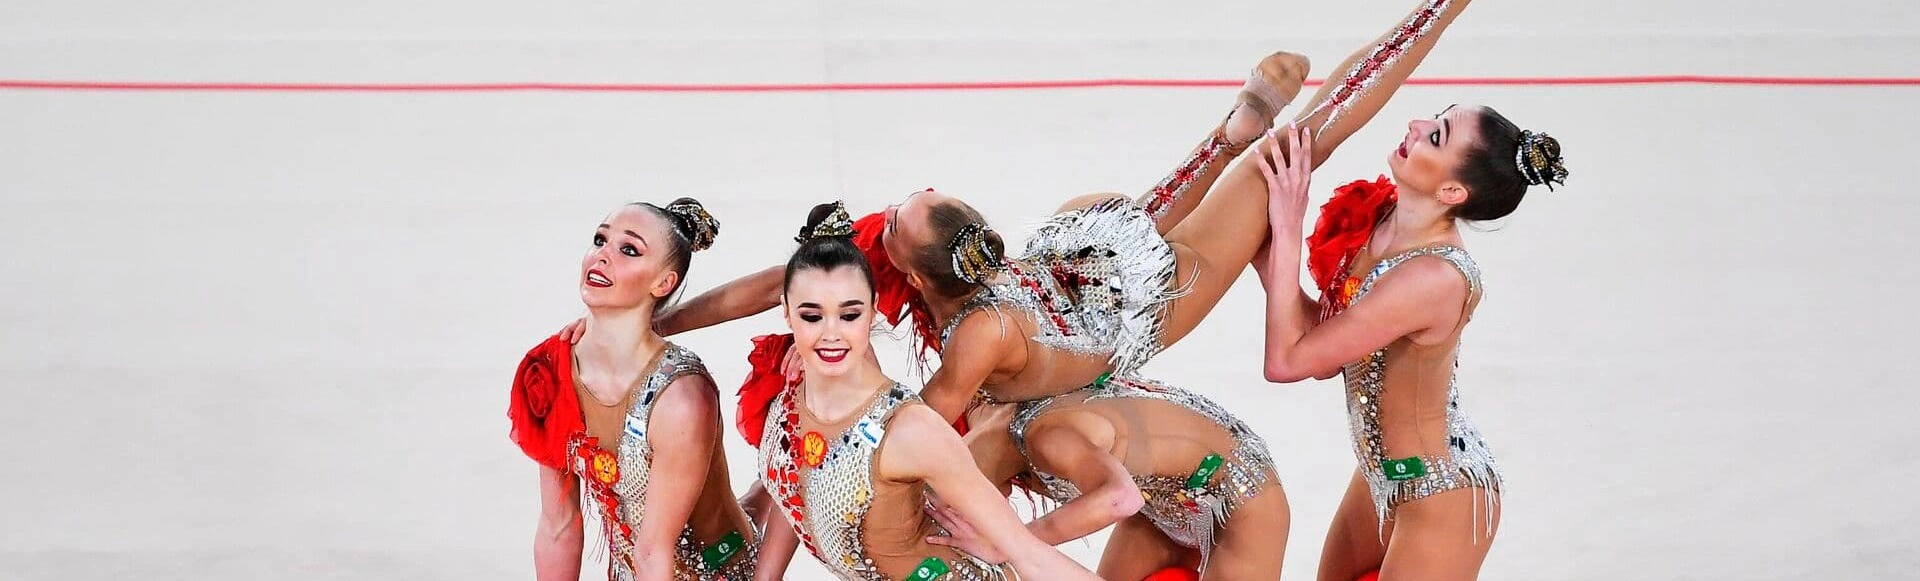 Сборная России по художественной гимнастике примет участие в турнире Игры стран СНГ